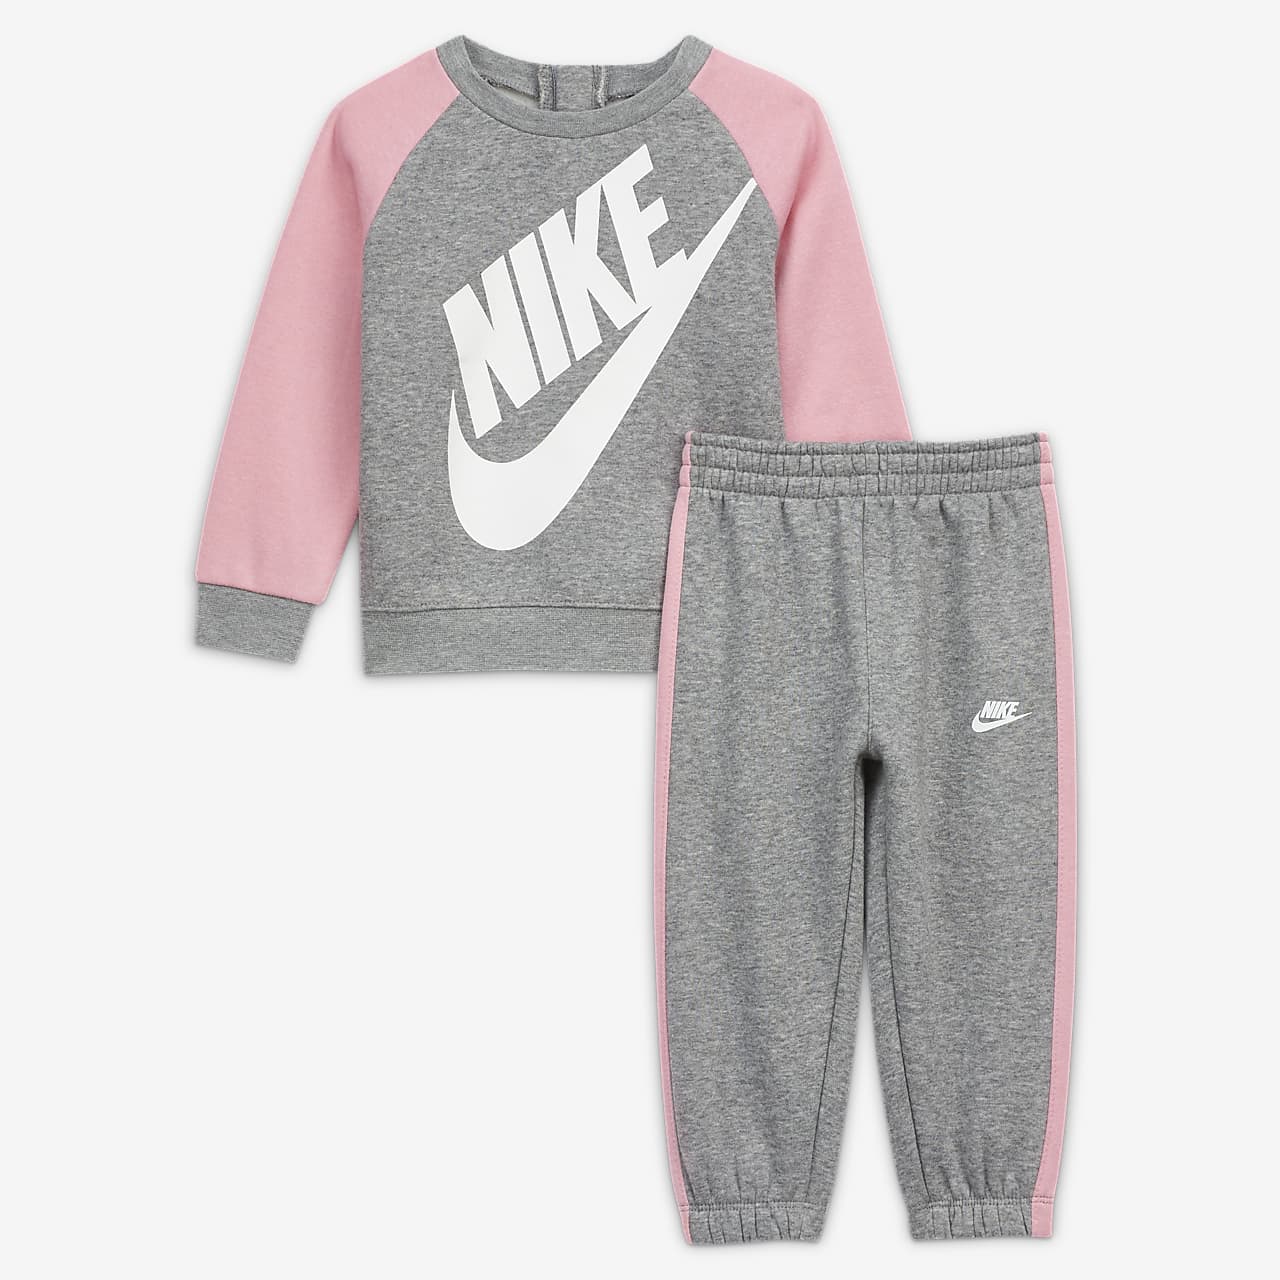 aan de andere kant, Vriend Initiatief Zestaw bluza i spodnie dla niemowląt (12-24 M) Nike. Nike PL